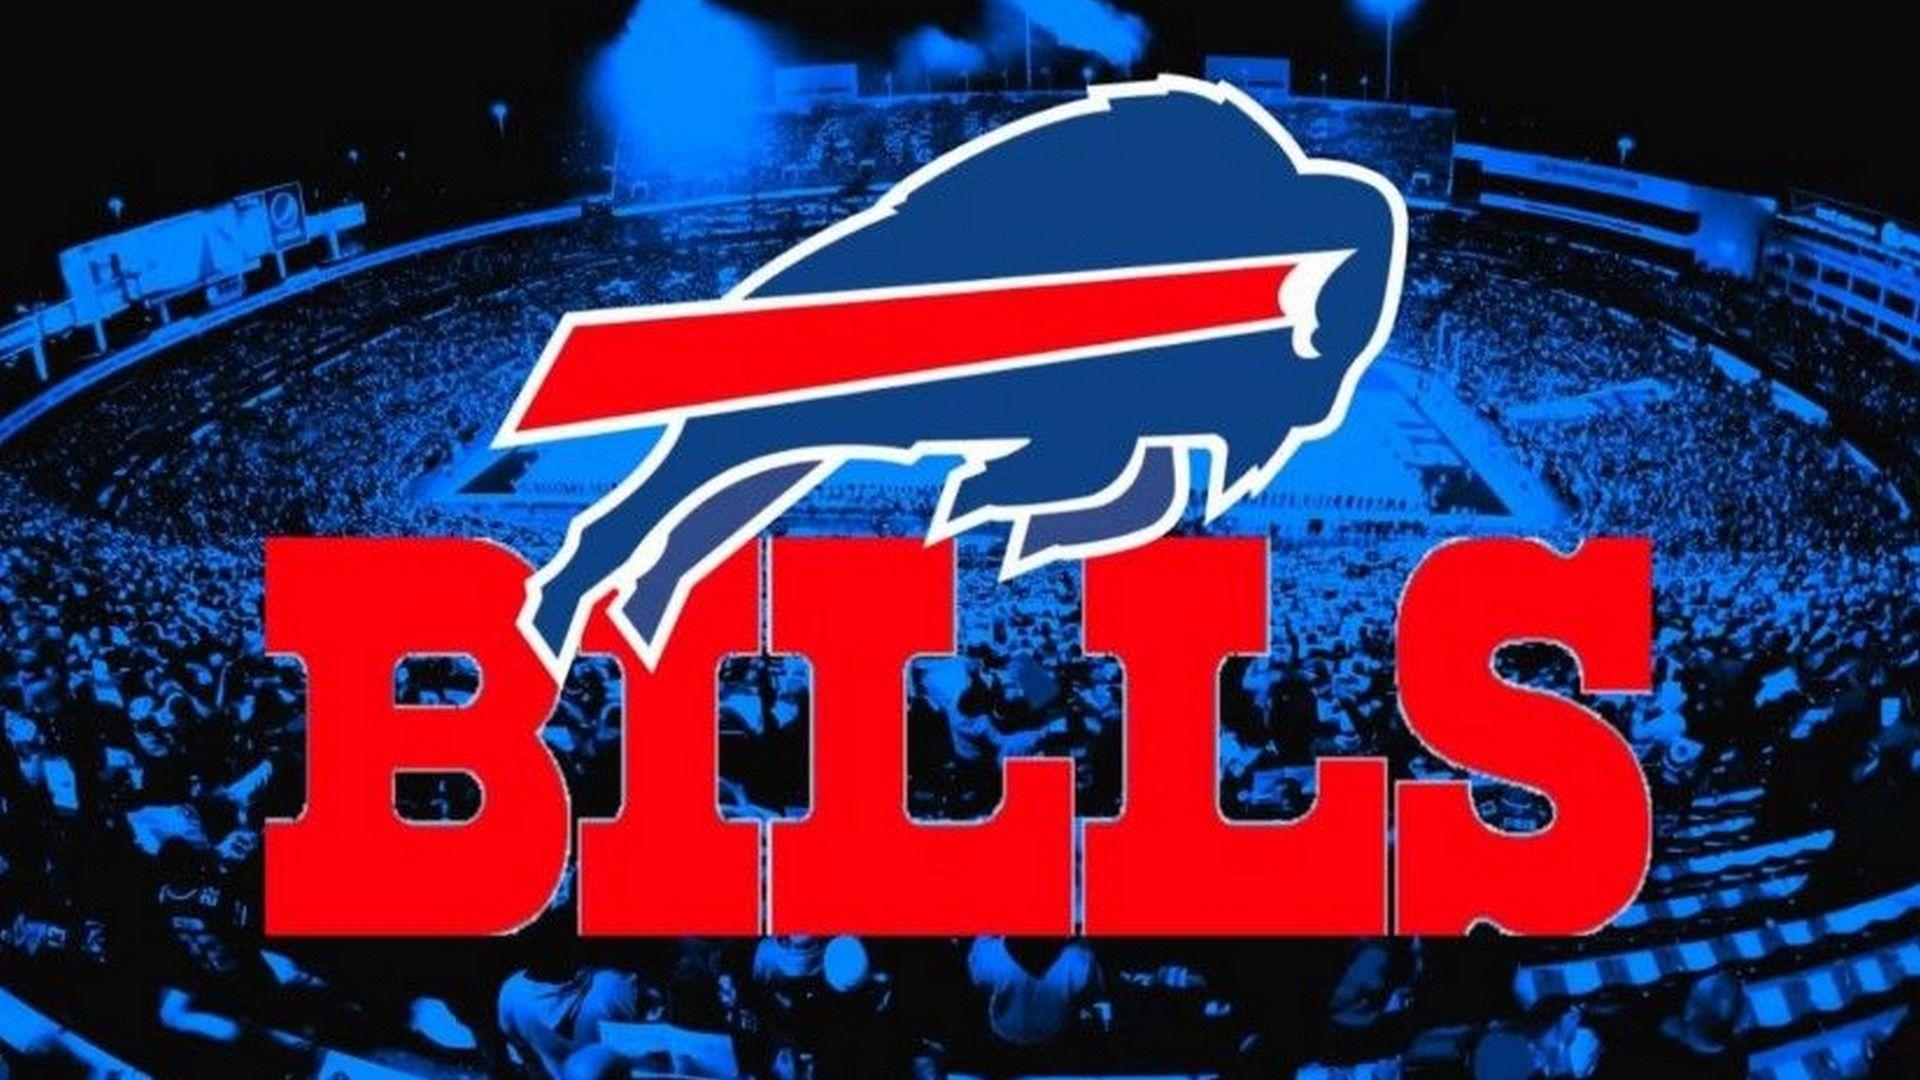 NFL TEAM FAN CUSTOM GRAPHIC 3D PRINTED APPAREL N Y Buffalo Bills